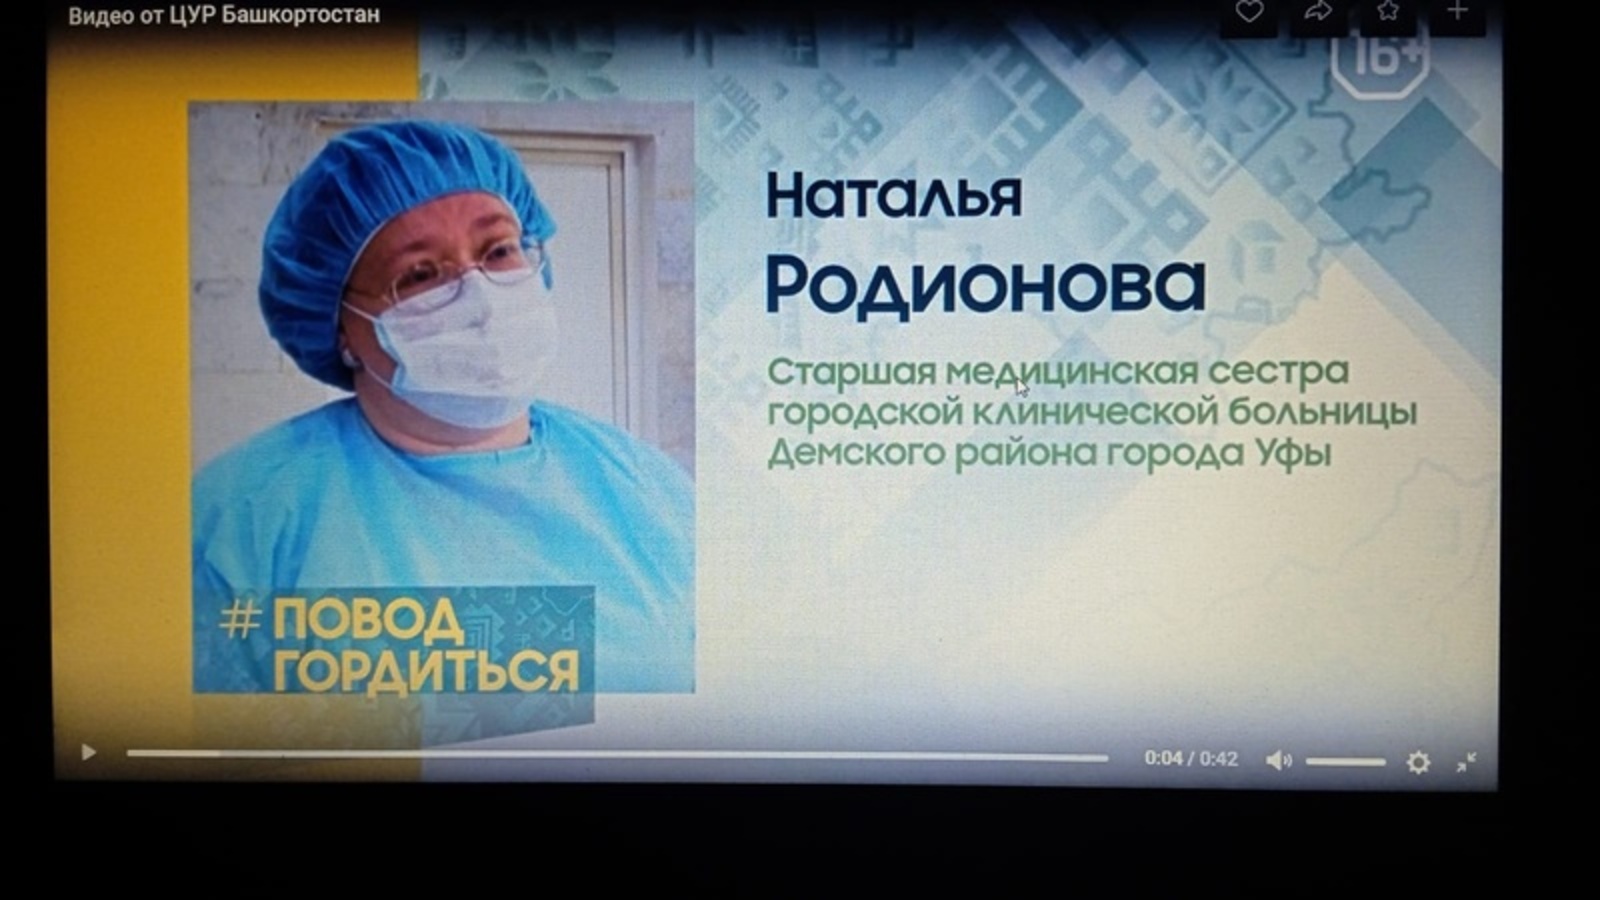 В Башкирии героем проекта «Повод гордиться» стала медсестра Наталья Родионова